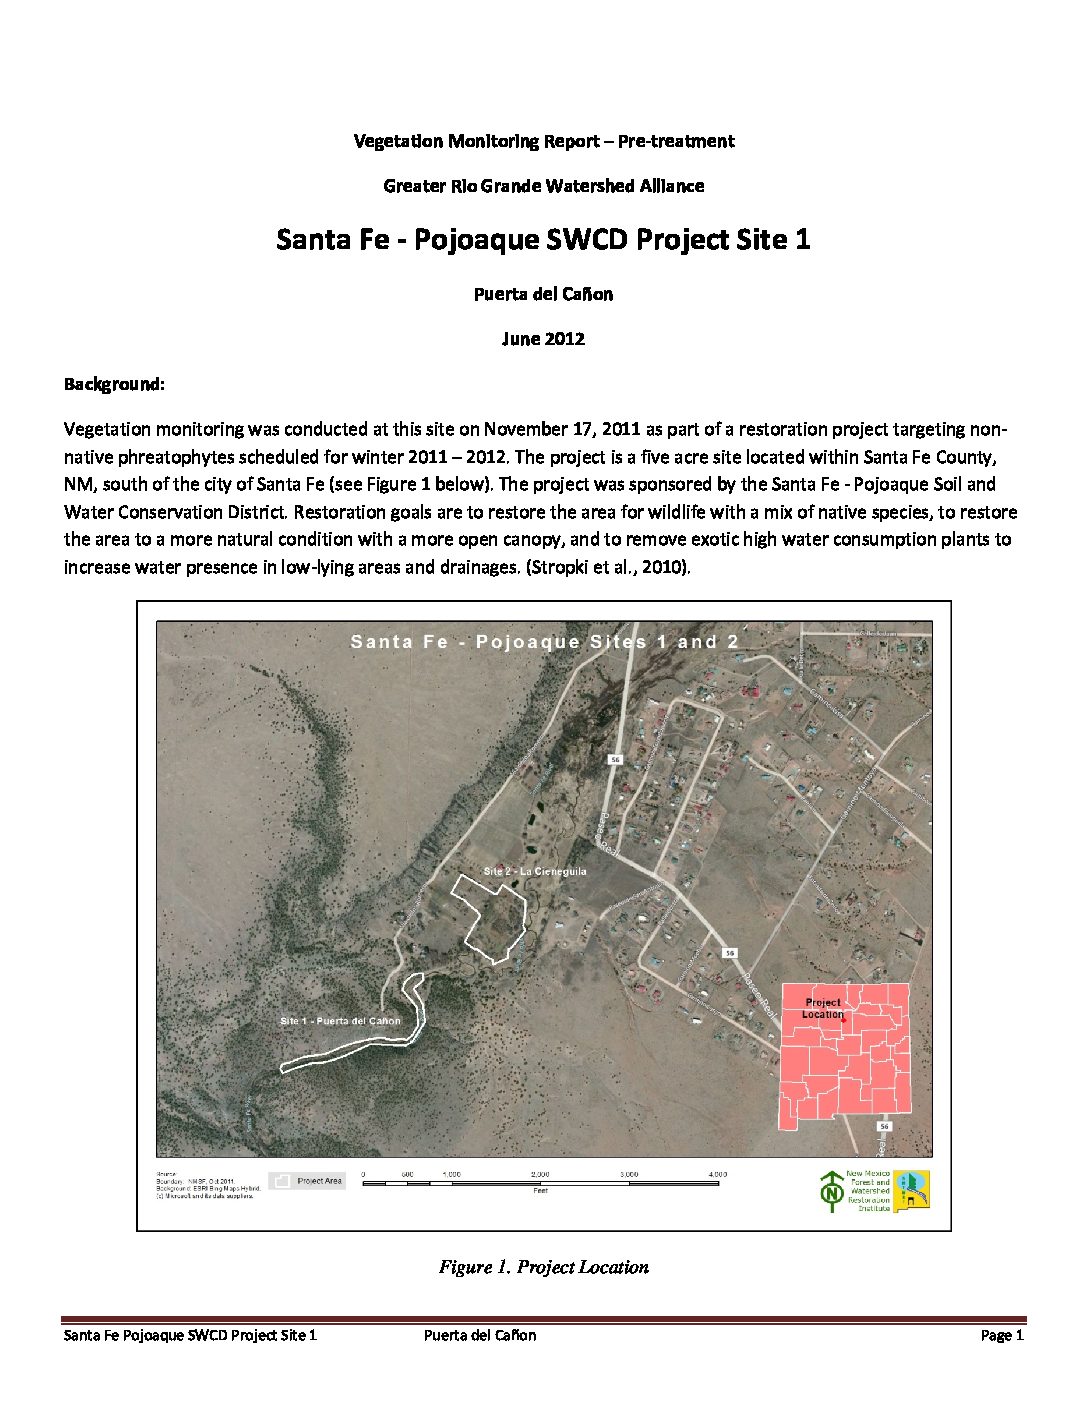 Puerta del Cañon, Santa Fe Pojoaque SWCD, Project Site 1, Pre-Treatment Monitoring 2012